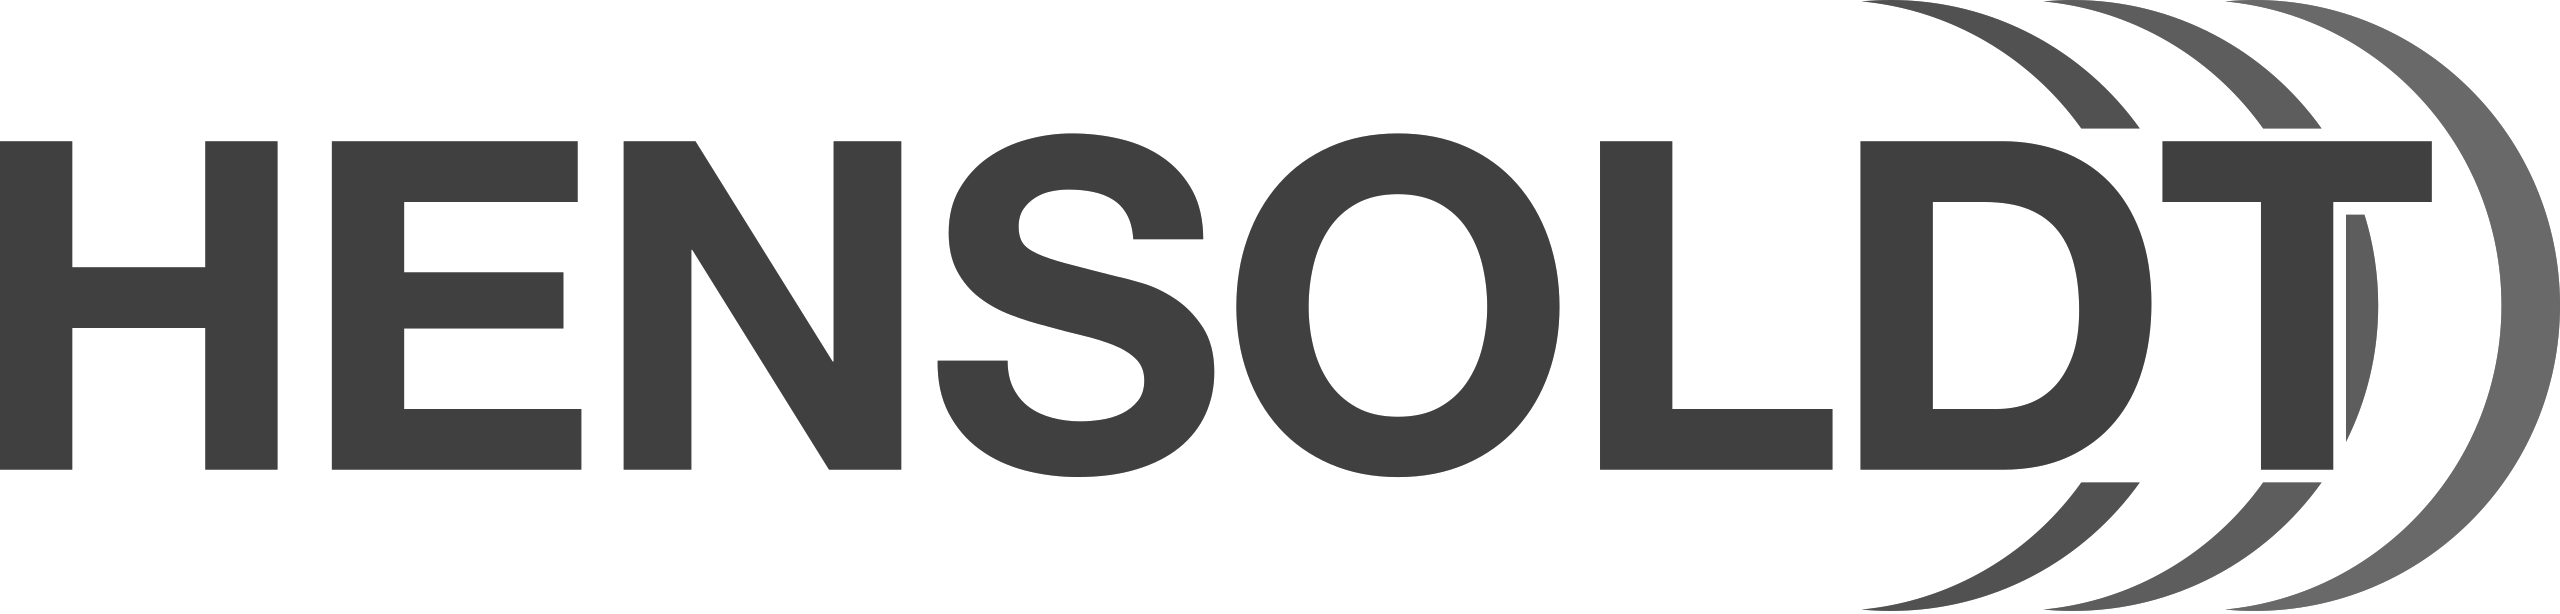 hensoldt logo-1